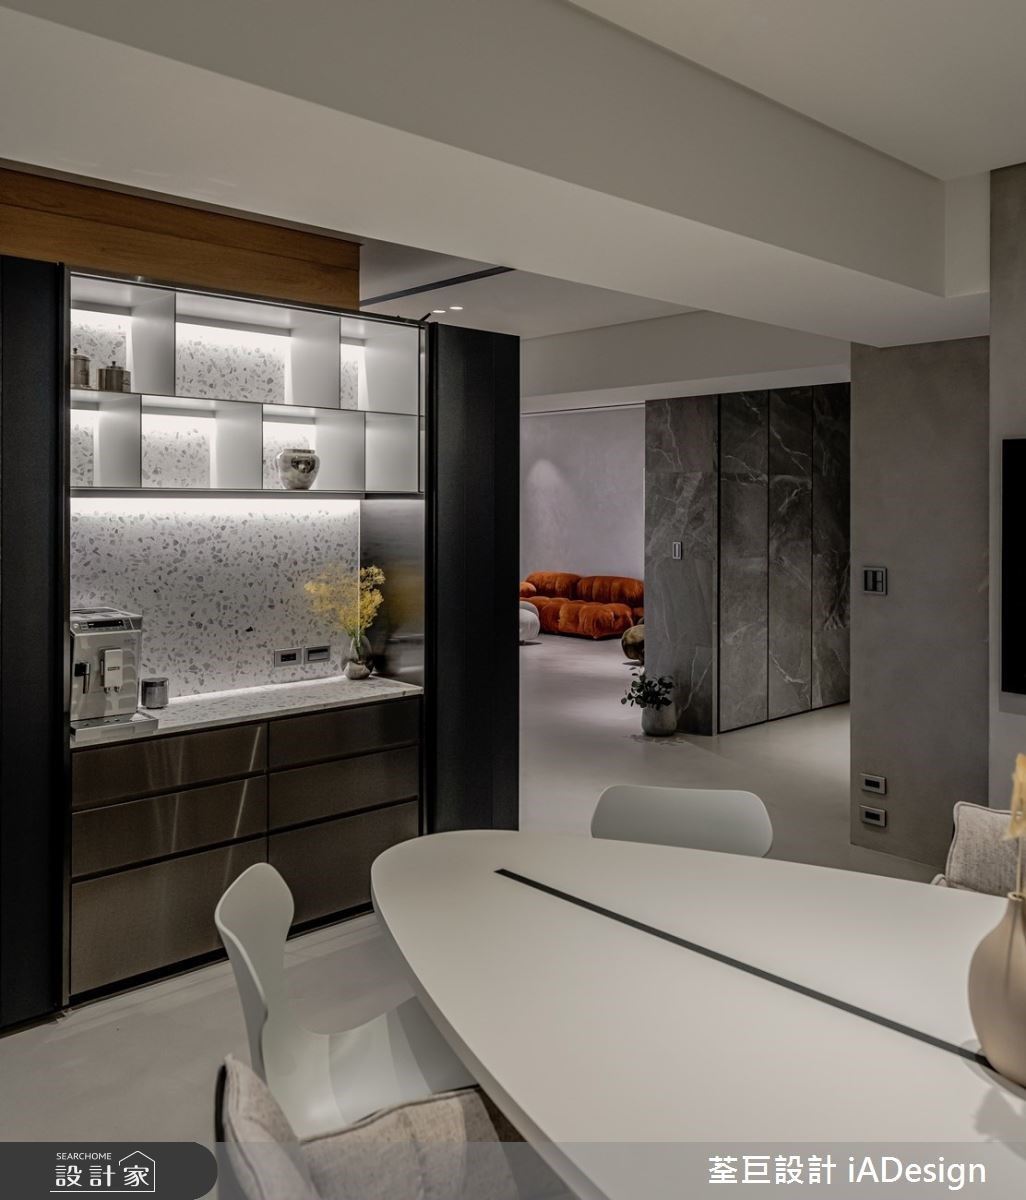 餐具櫃延續客廳區櫃體主題，以磨石子和鍍鈦金屬，使公領域空間有一致性。